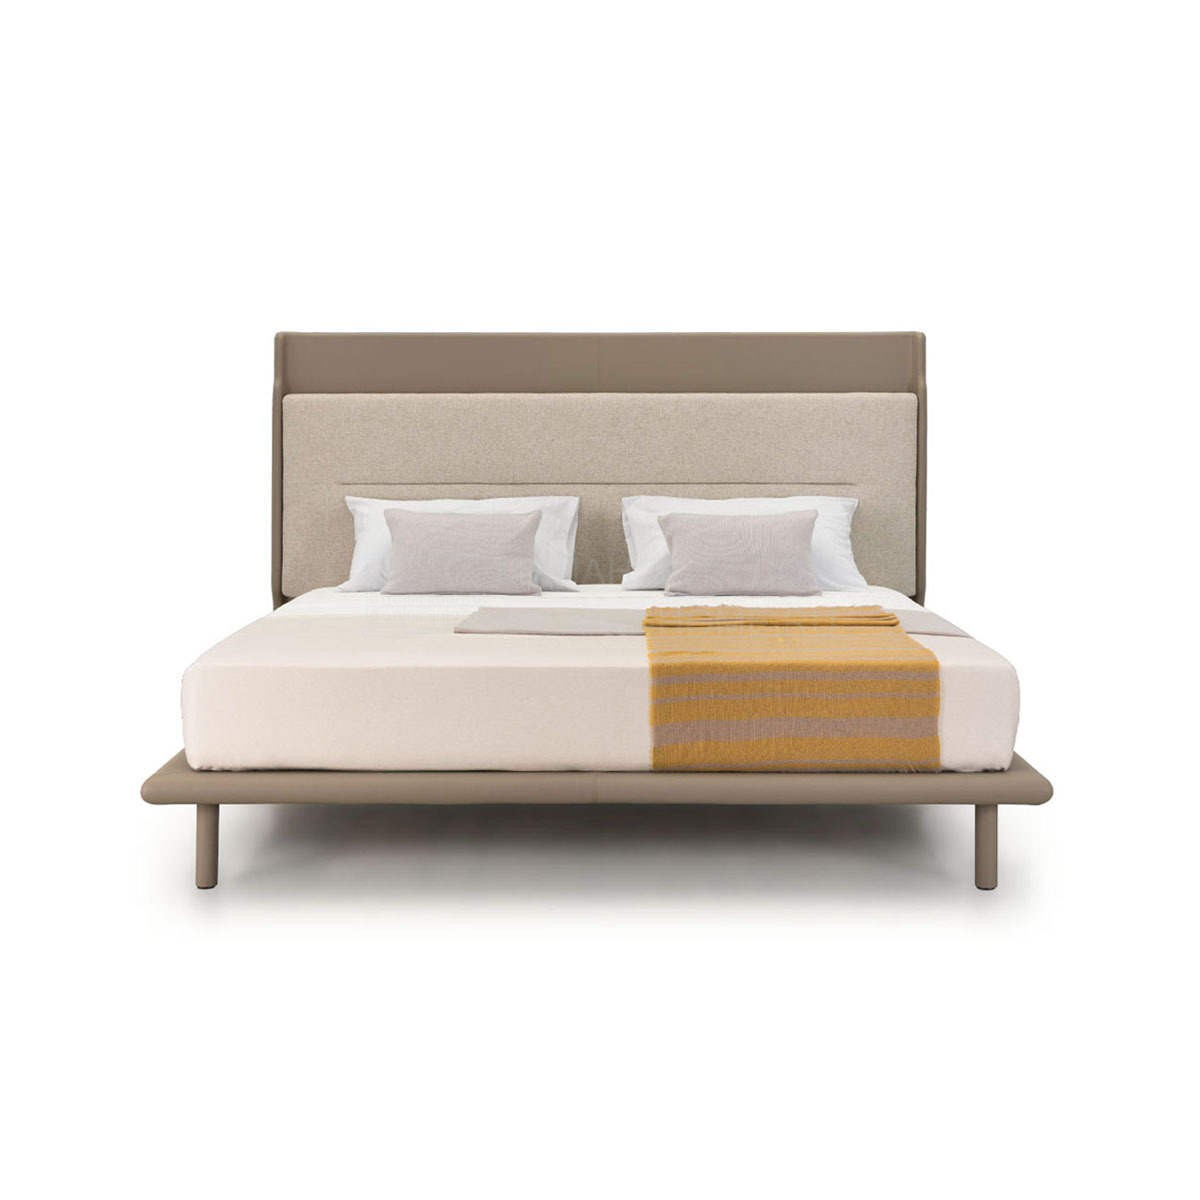 Двуспальная кровать Zero bed из Италии фабрики TURRI